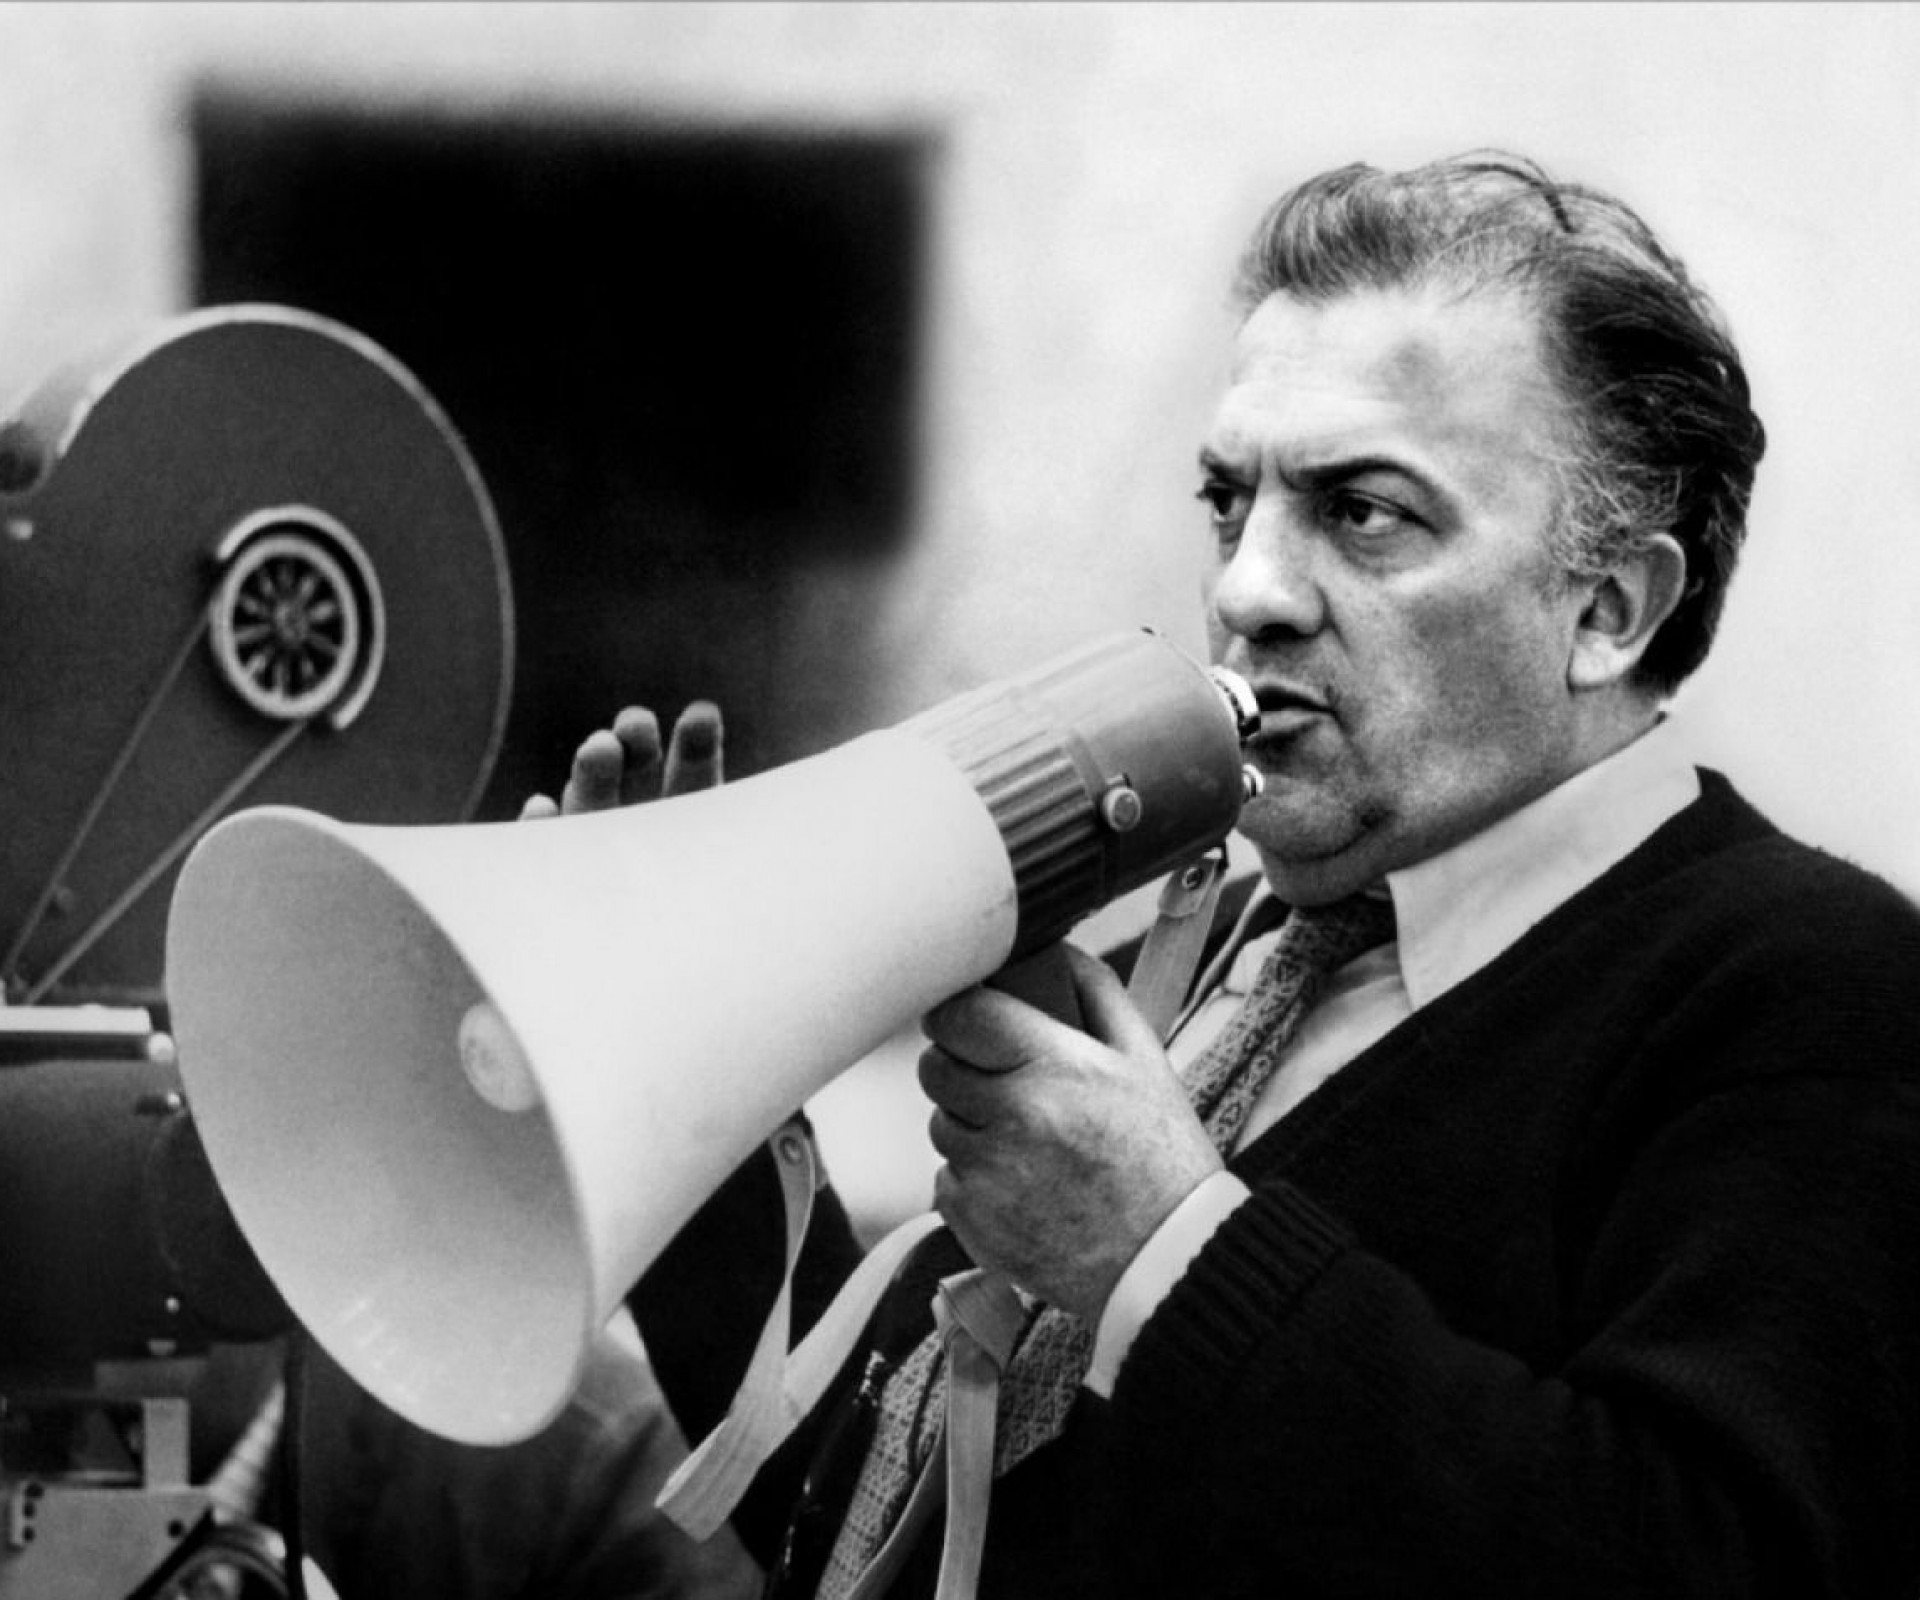 Fellini e il Sogno. Flavia Salierno intervista Catherine McGilvray sul film “Fellini e l’Ombra”